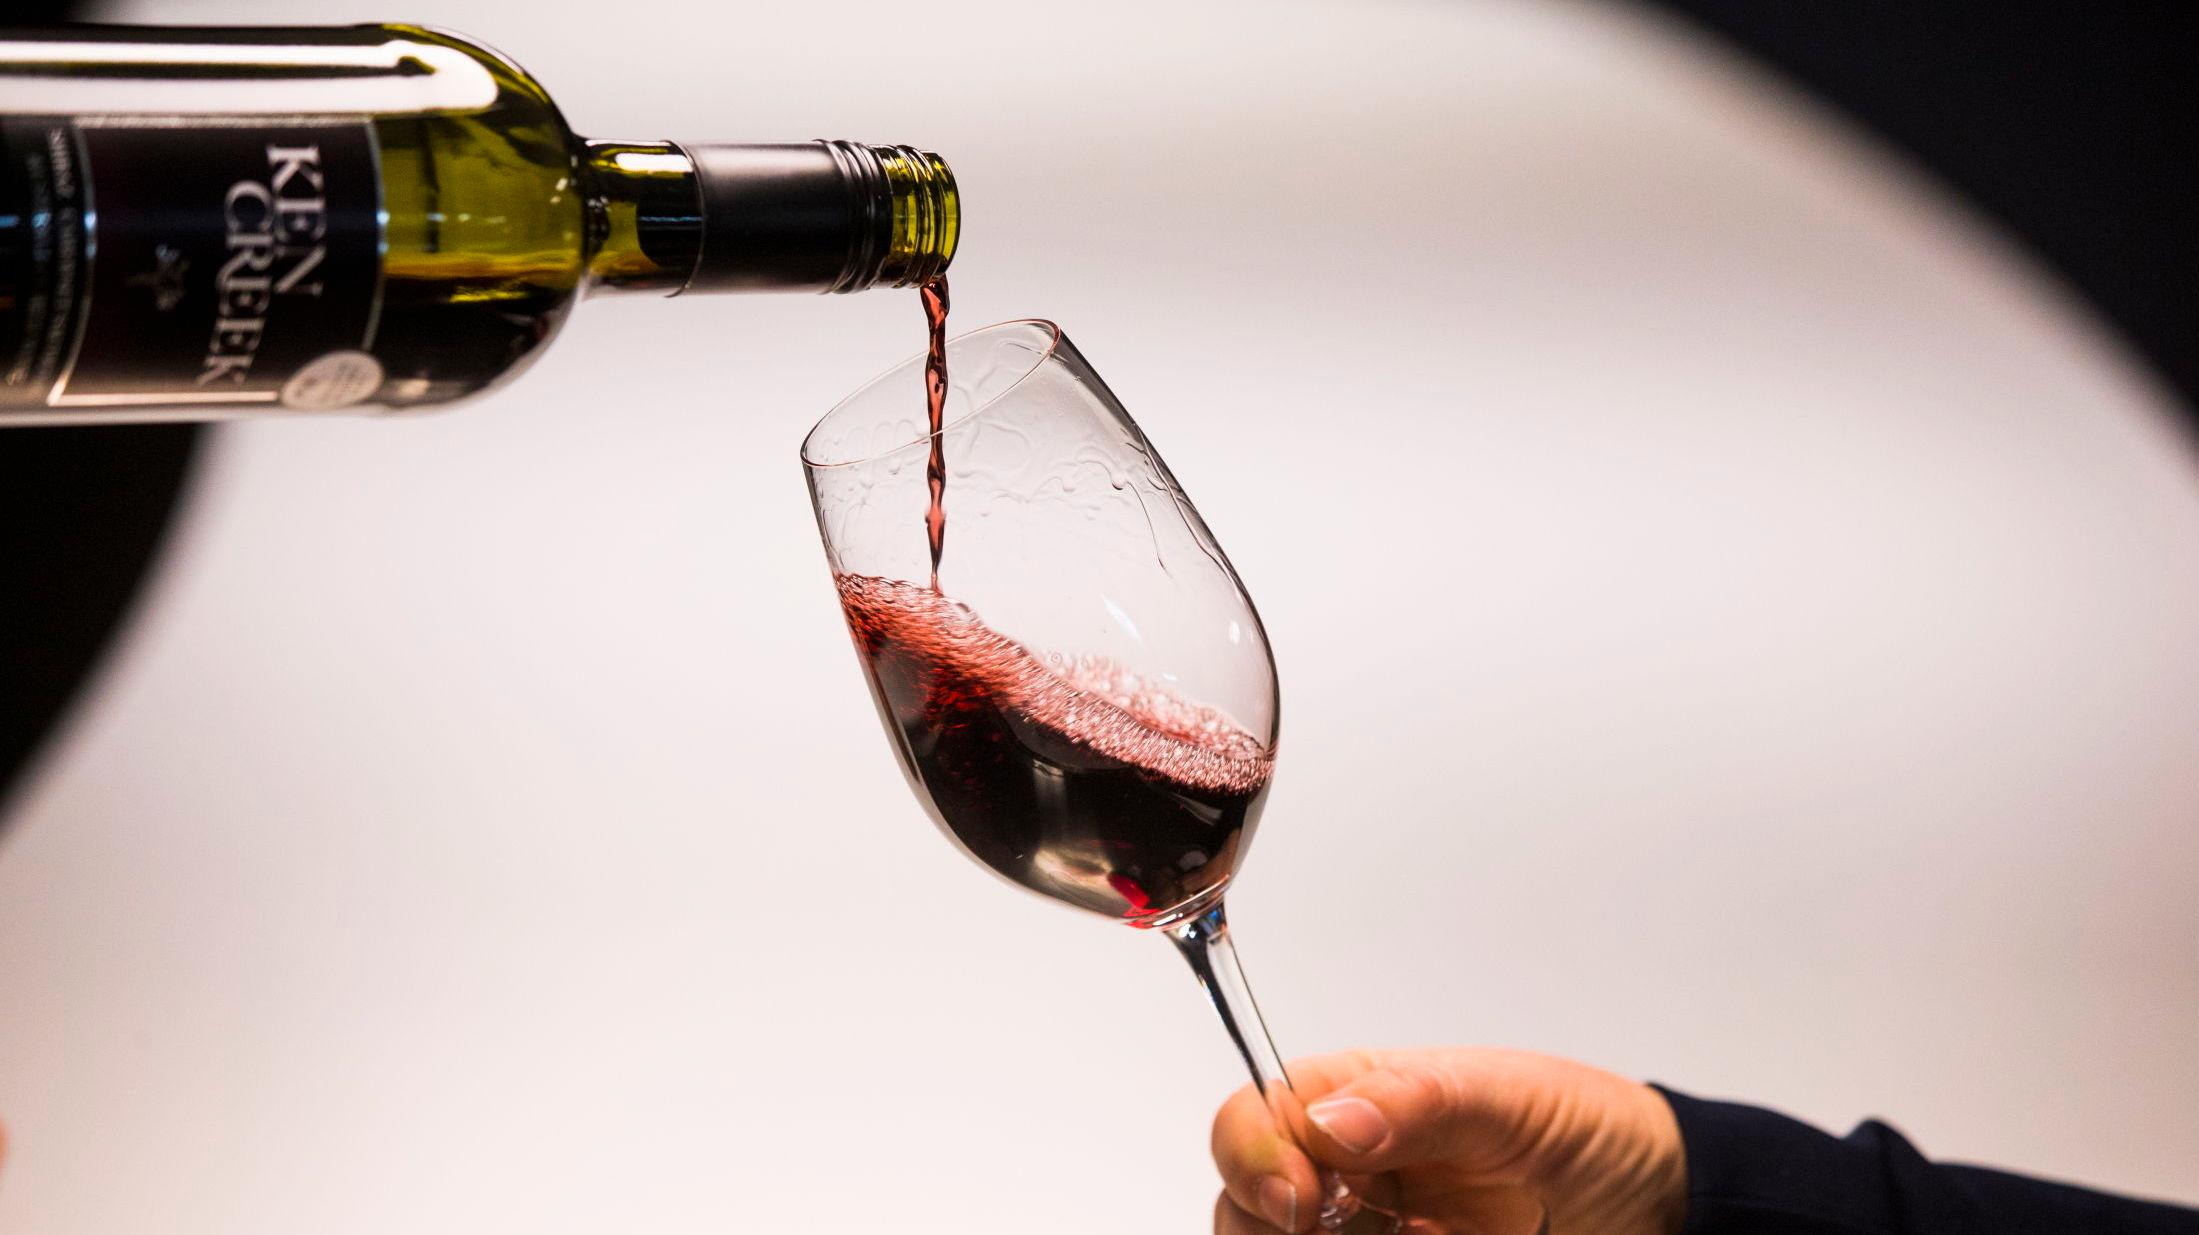 PASS PÅ: Ifølge VGs vinekspert bør du unngå å oppbevare vinen på kjøkkenbenken. Sett den heller et sted som er mørkt og kjølig. Foto: Frode Hansen/VG